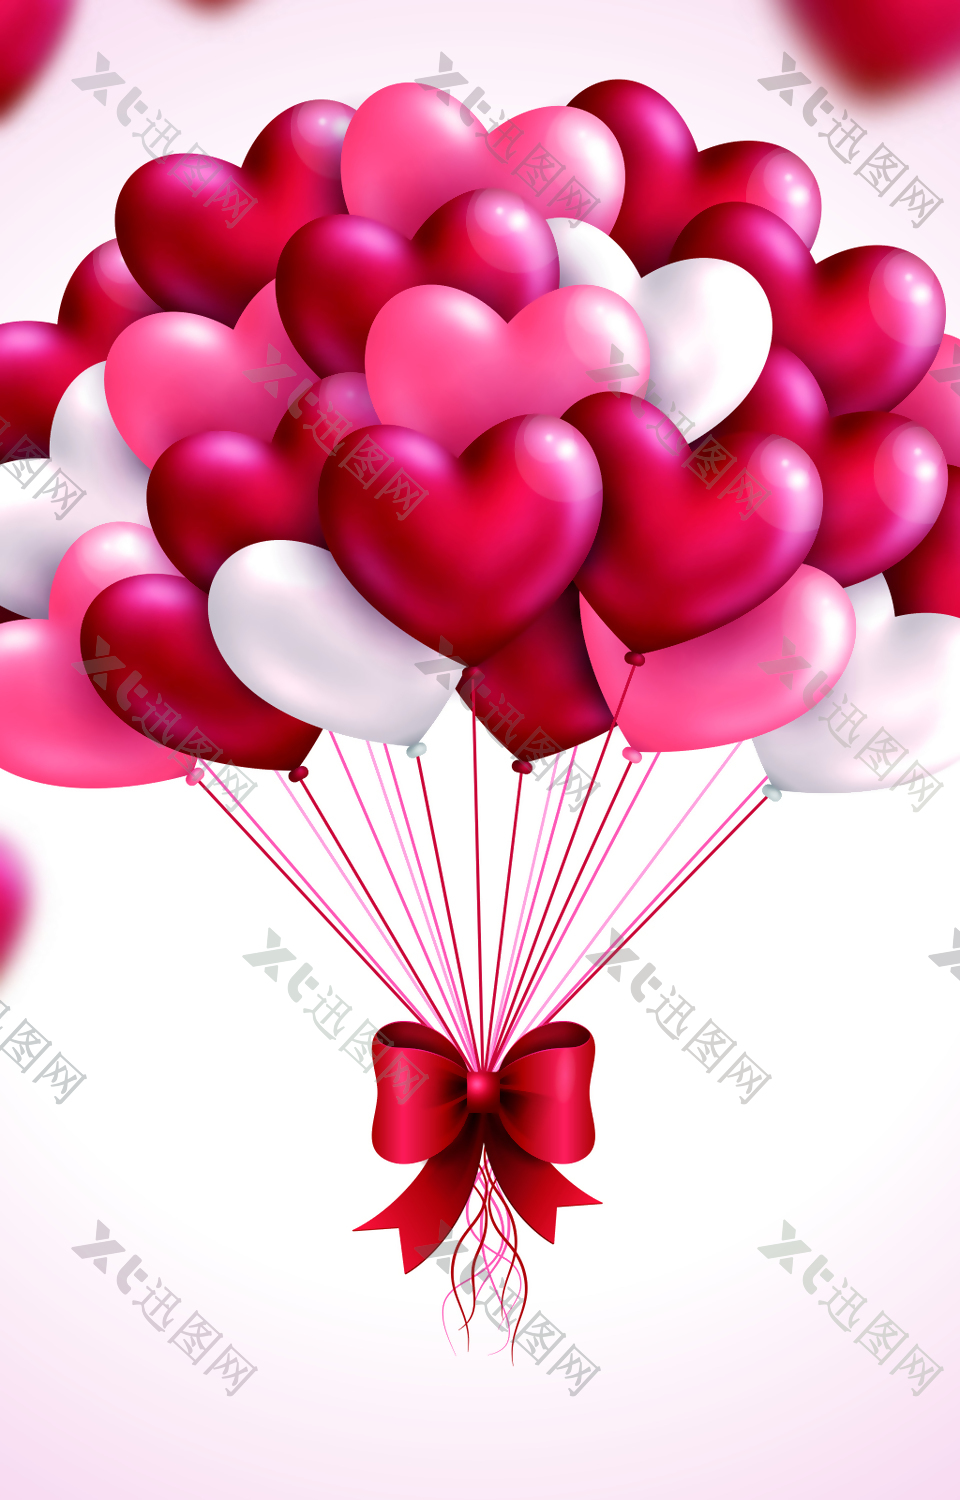 粉色爱心气球背景素材